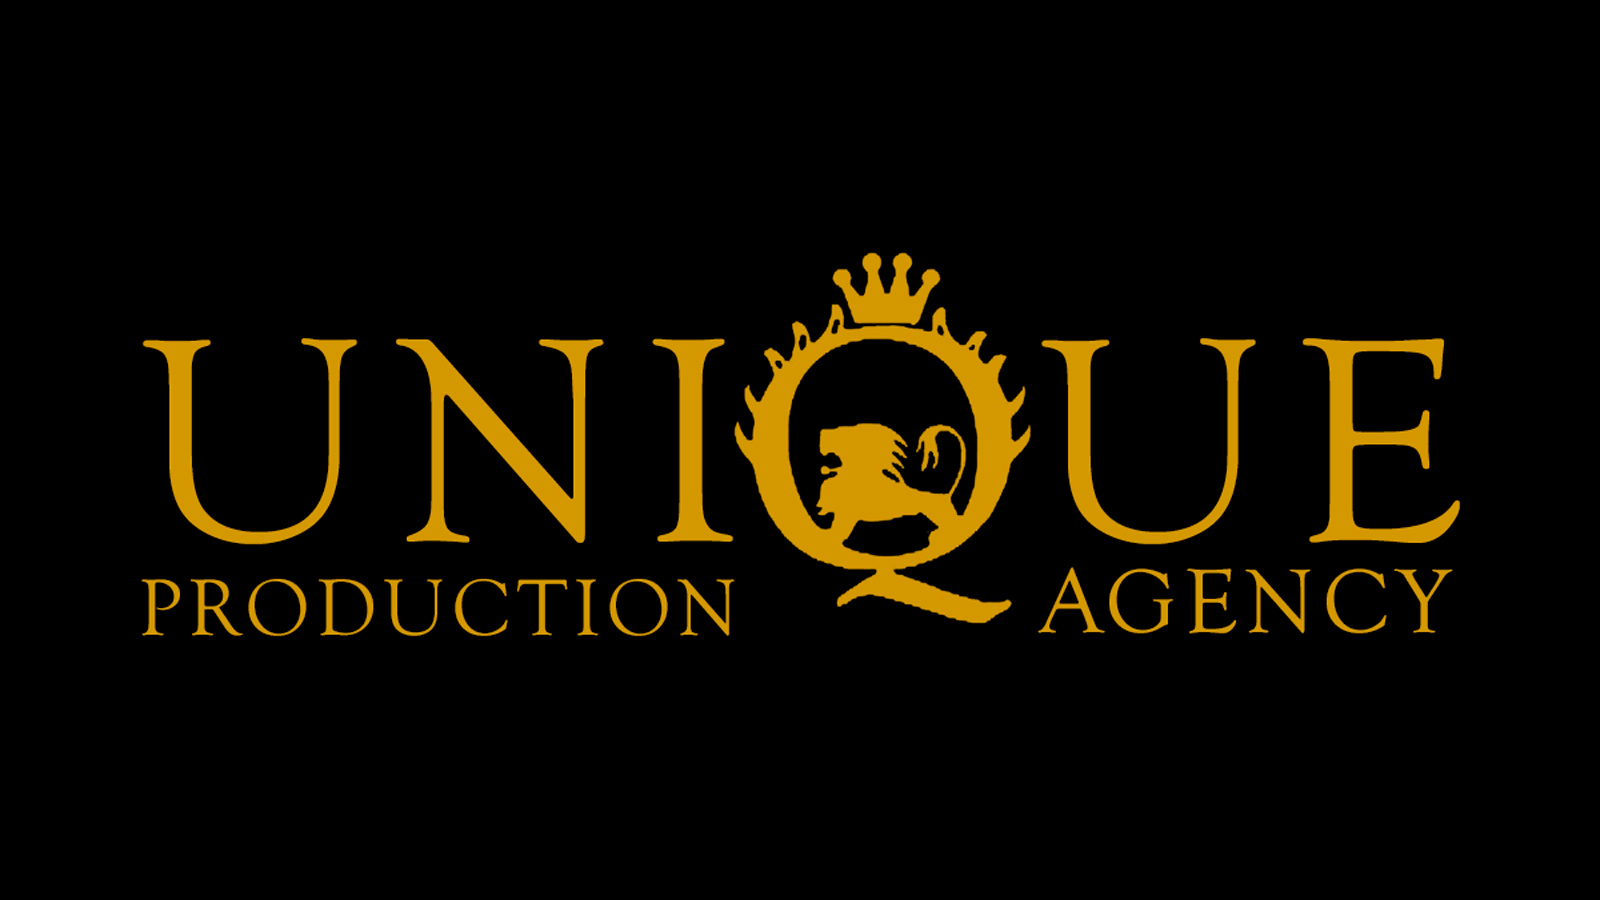 UNIQUE M&C. AGENCY production